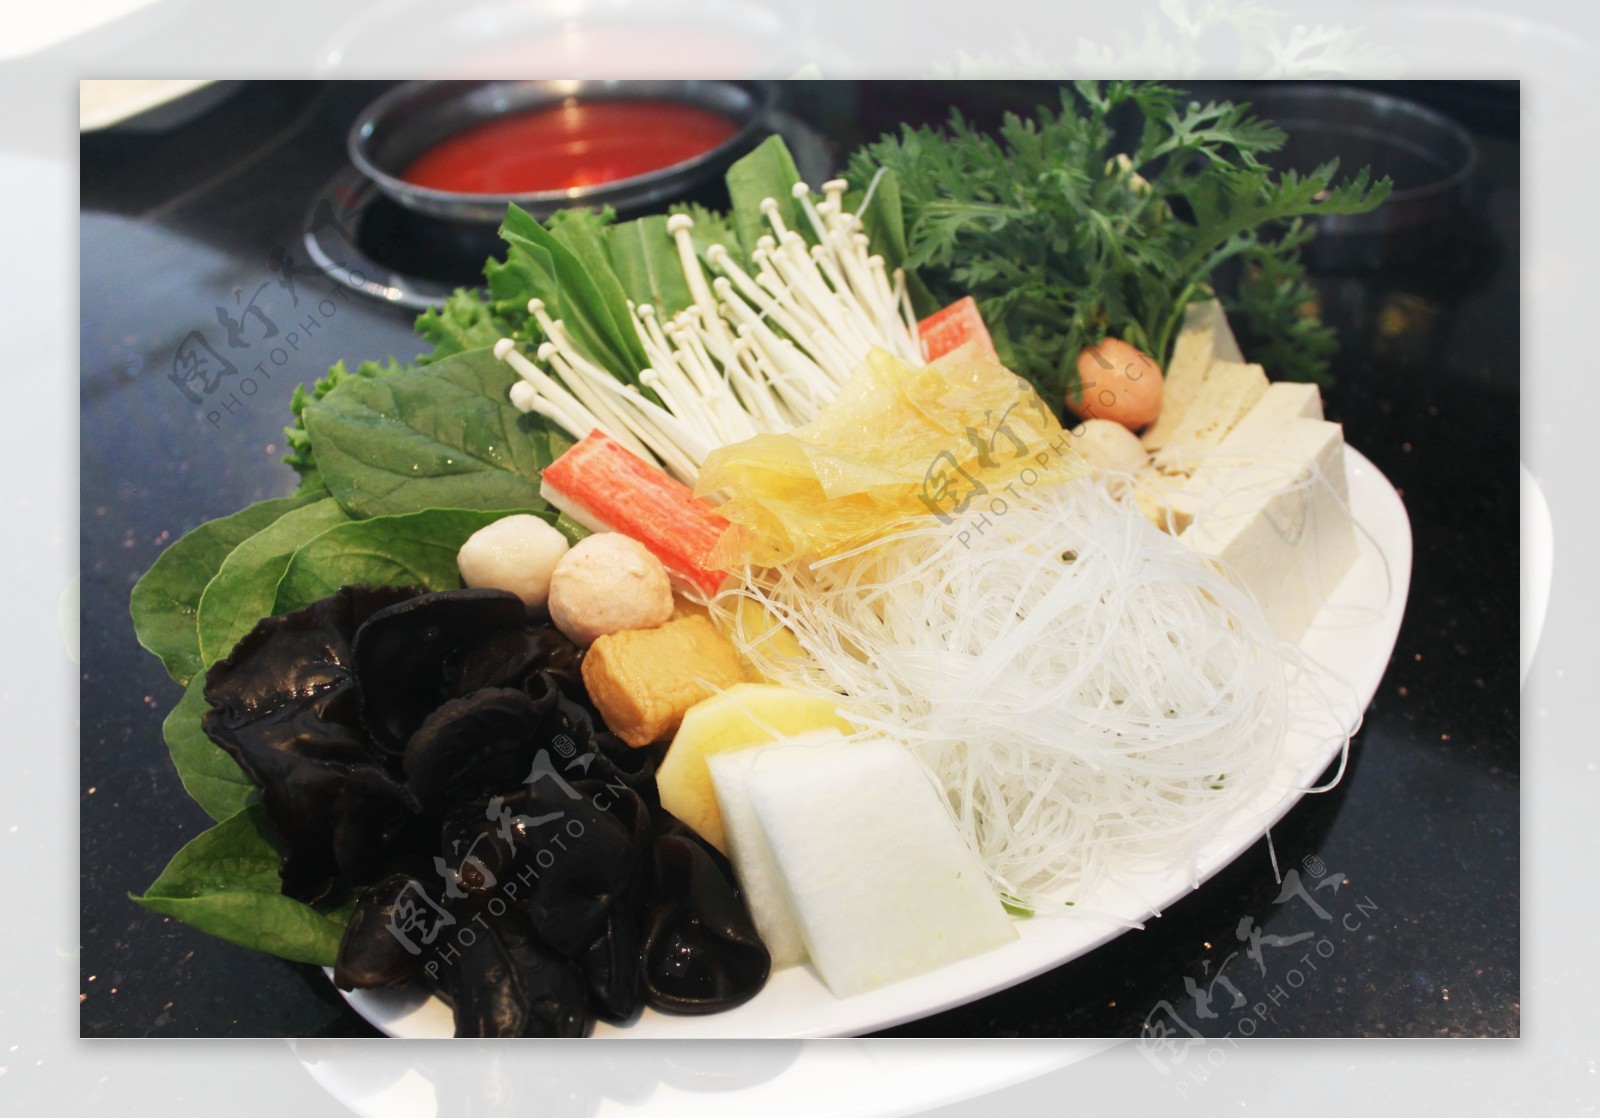 蔬菜拼盘火锅图片